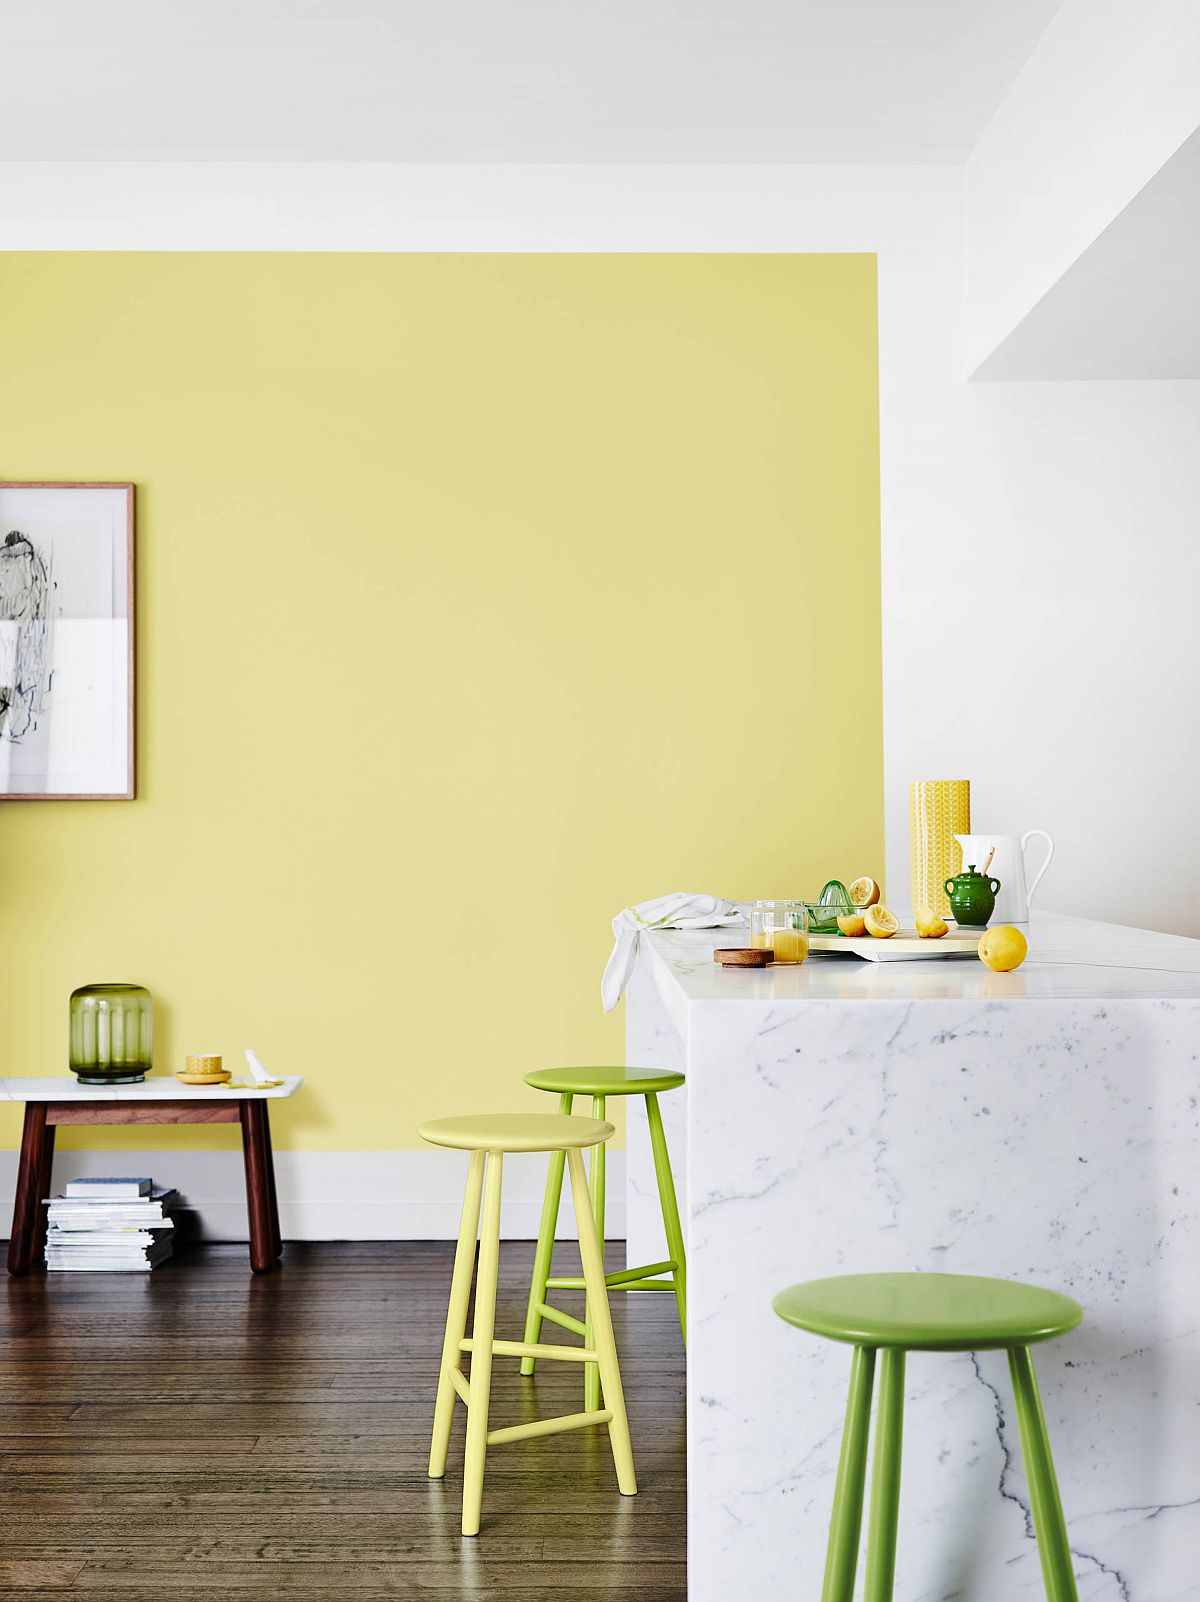 Hãy tạo nên sự kết hợp vàng - xanh của riêng bạn trong một phòng bếp hiện đại.
